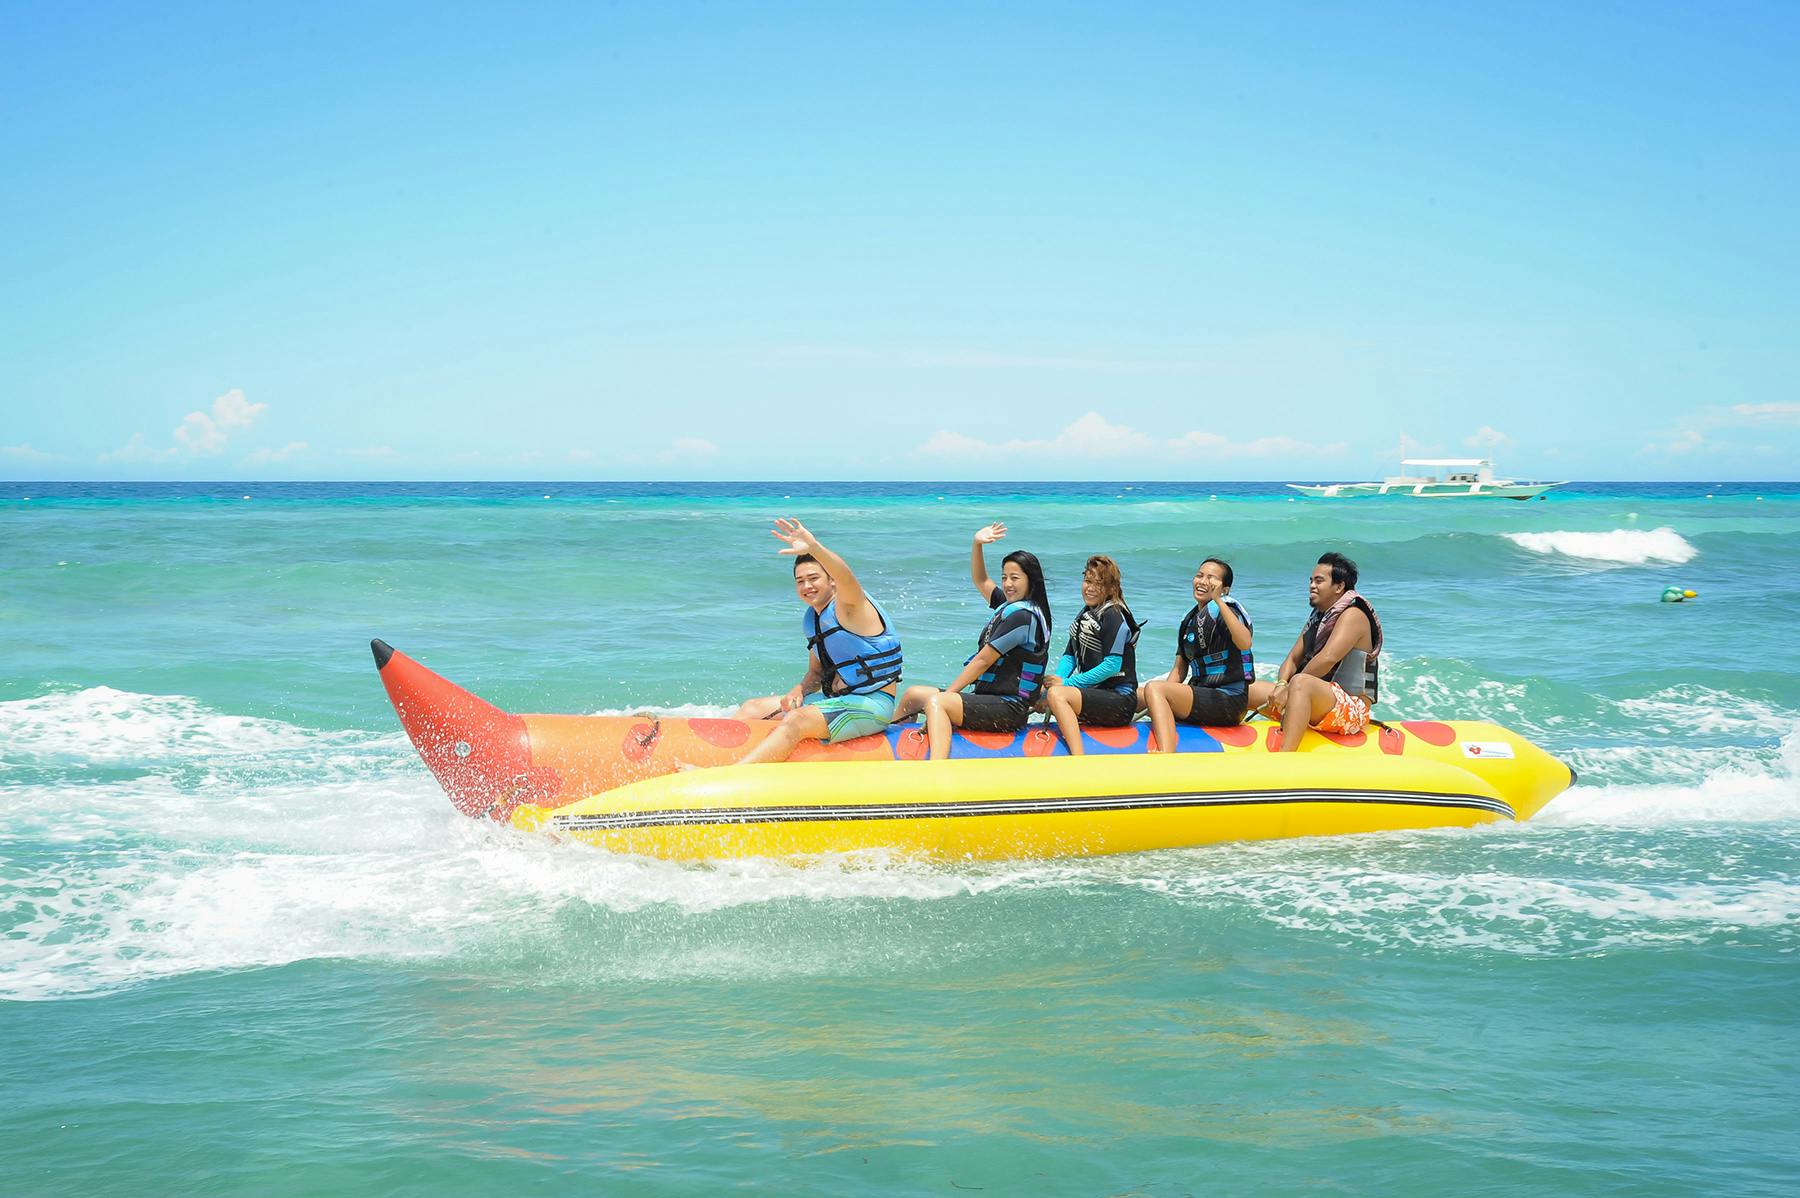 People riding on a banana boat at Bohol Beach Club Resort